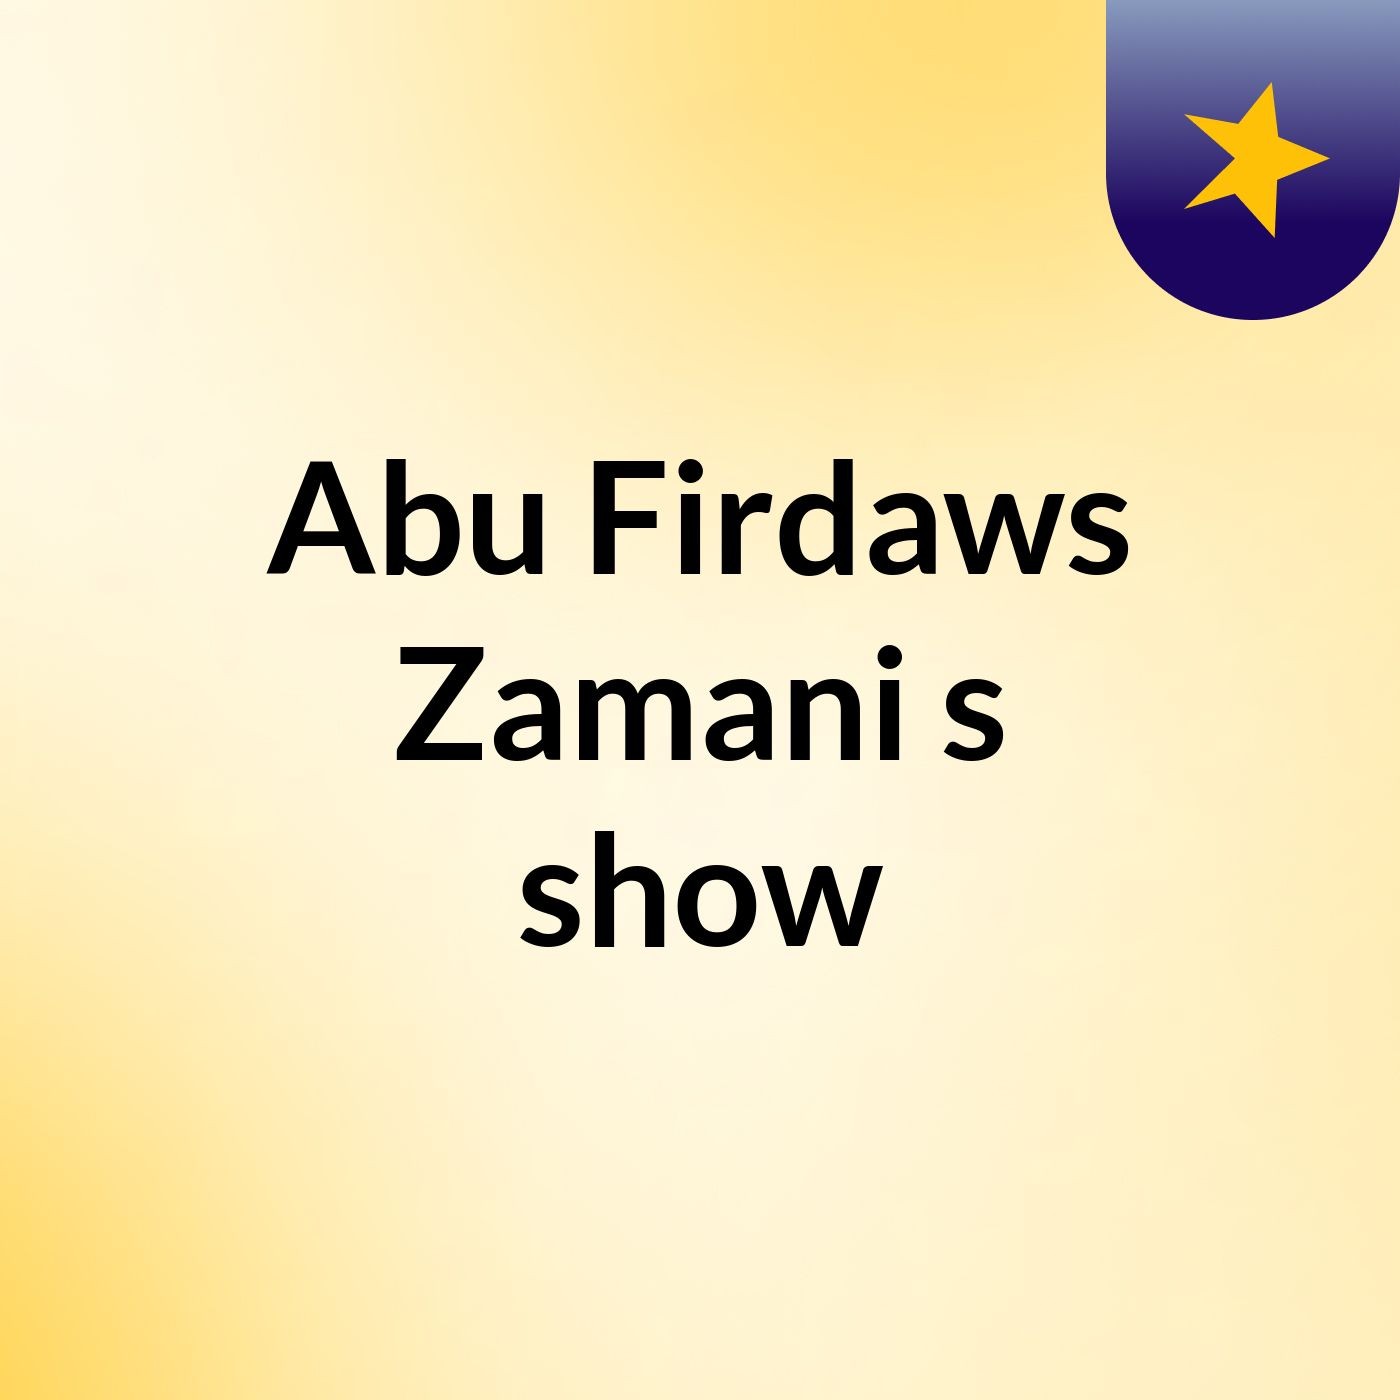 Abu Firdaws Zamani's show